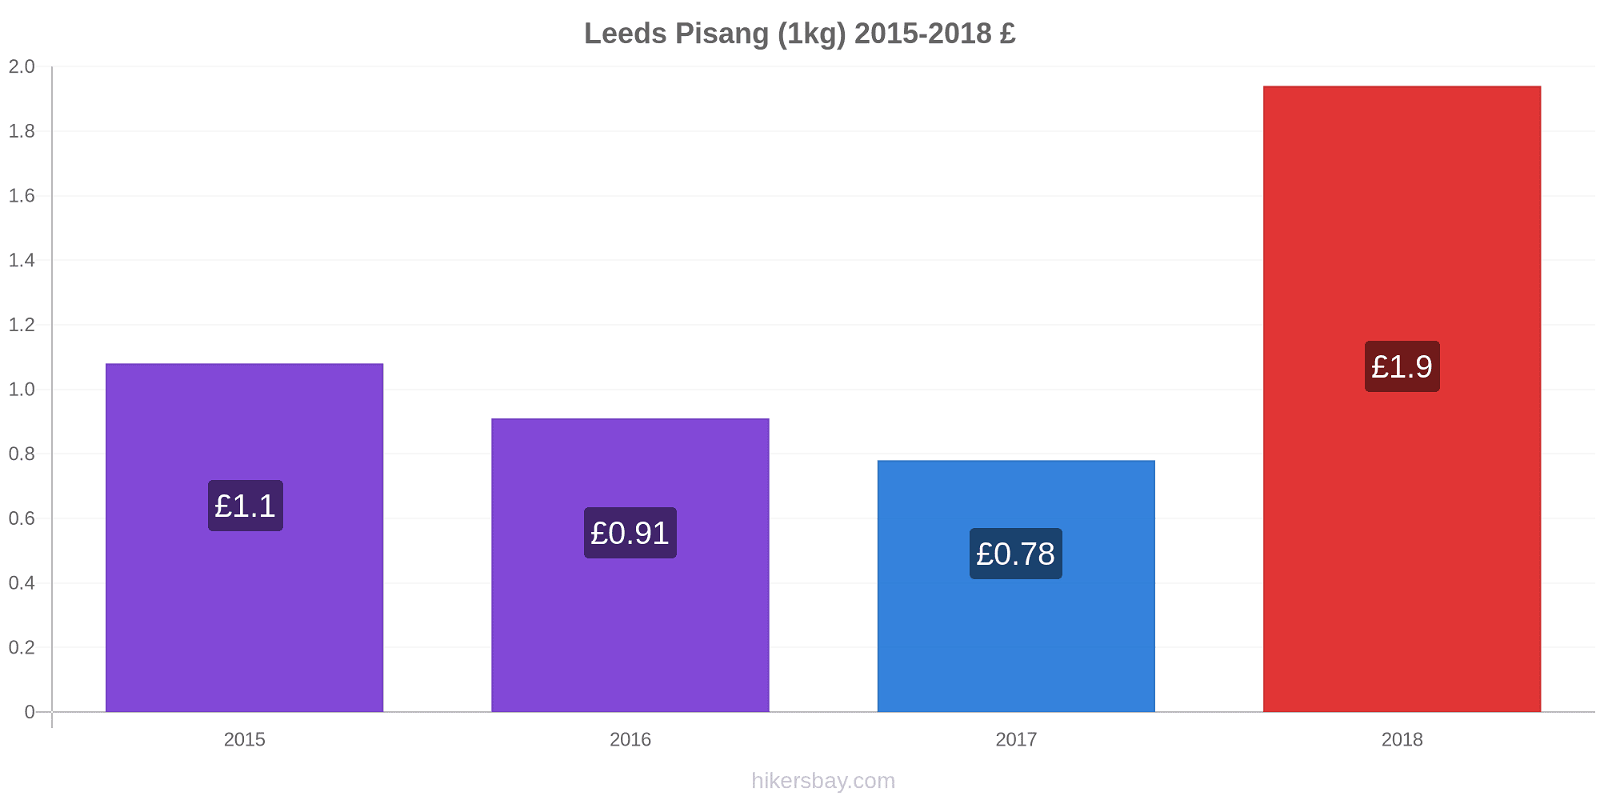 Leeds perubahan harga Pisang (1kg) hikersbay.com